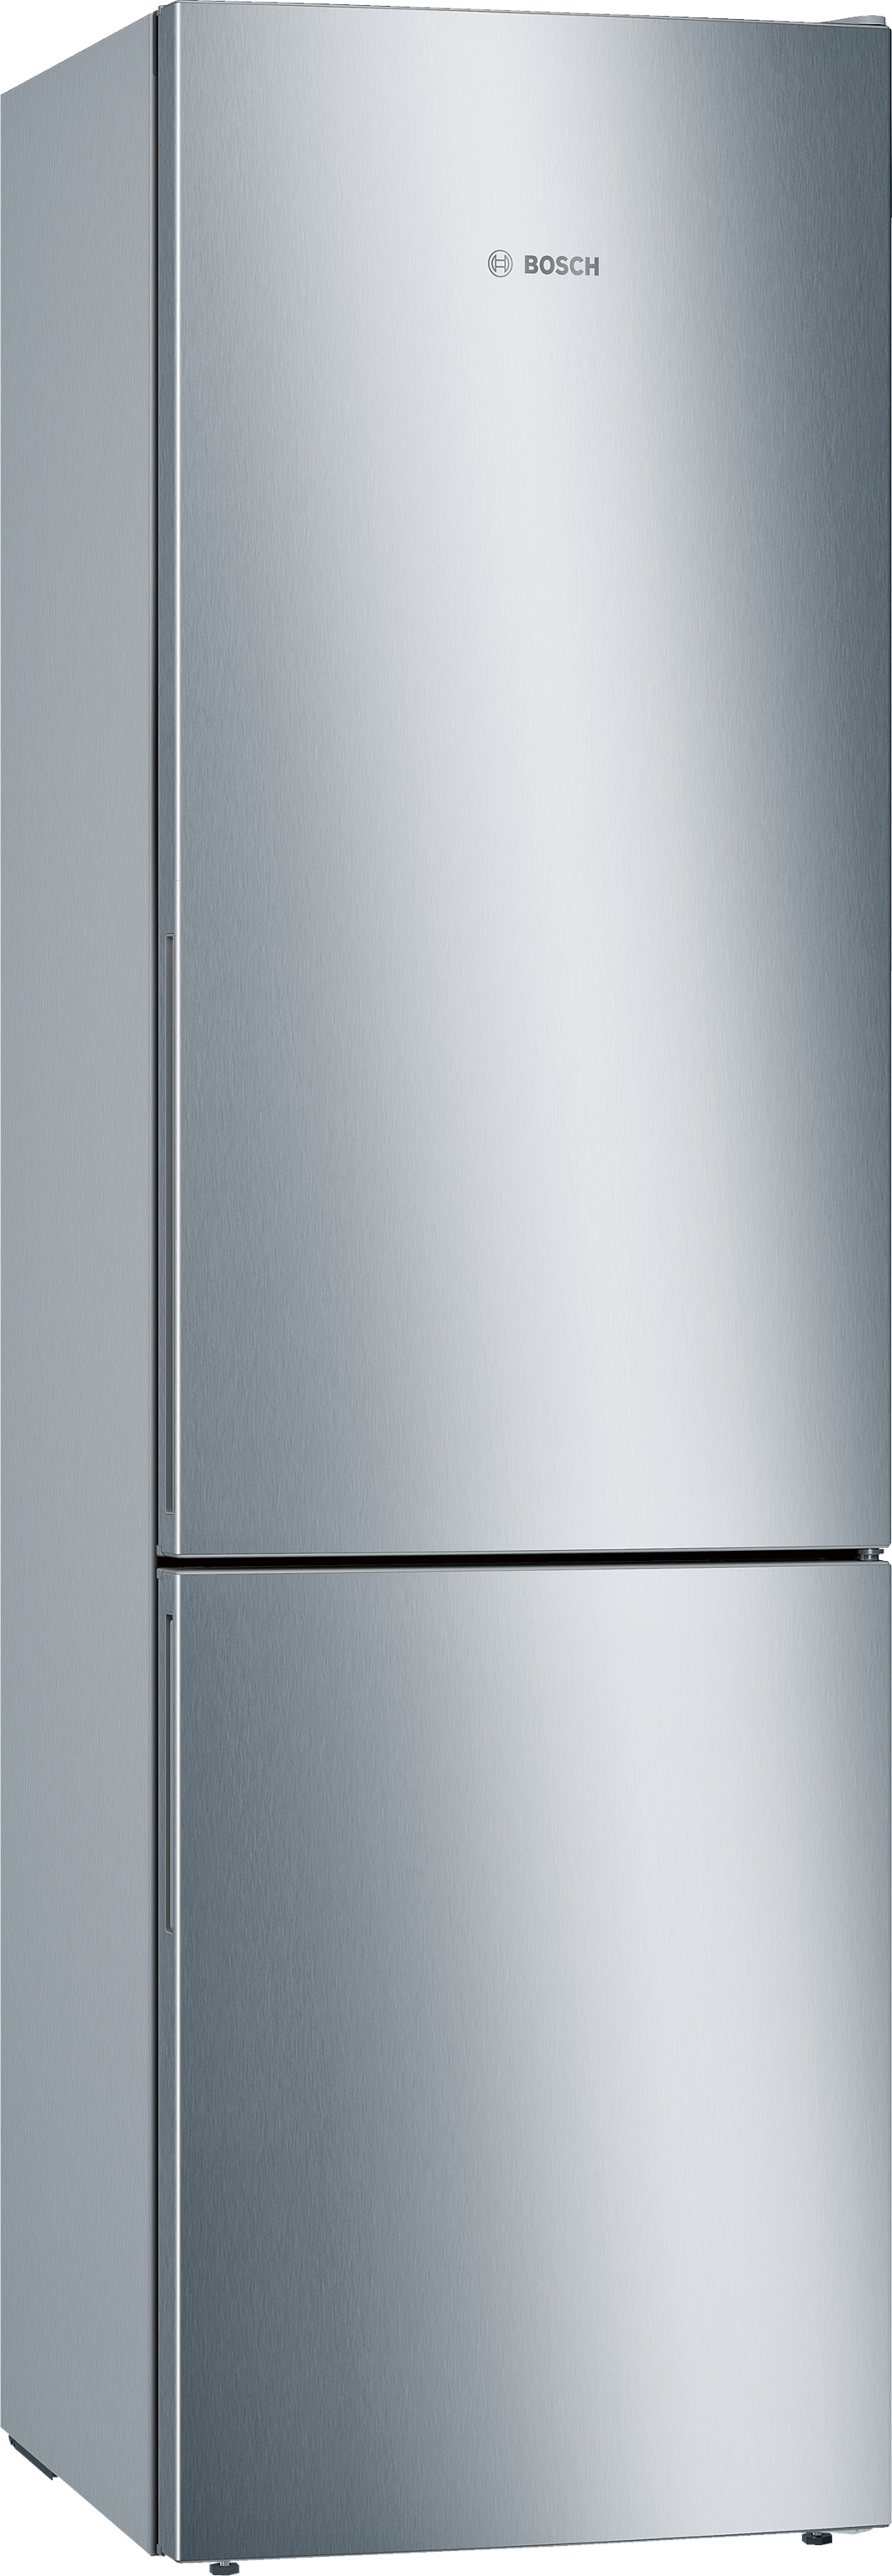 KGE39AICA Combină frigorifică independentă ,5 ANI GARANTIE,201 x 60 cm Inox AntiAmprentă.Clasa Energetica C 